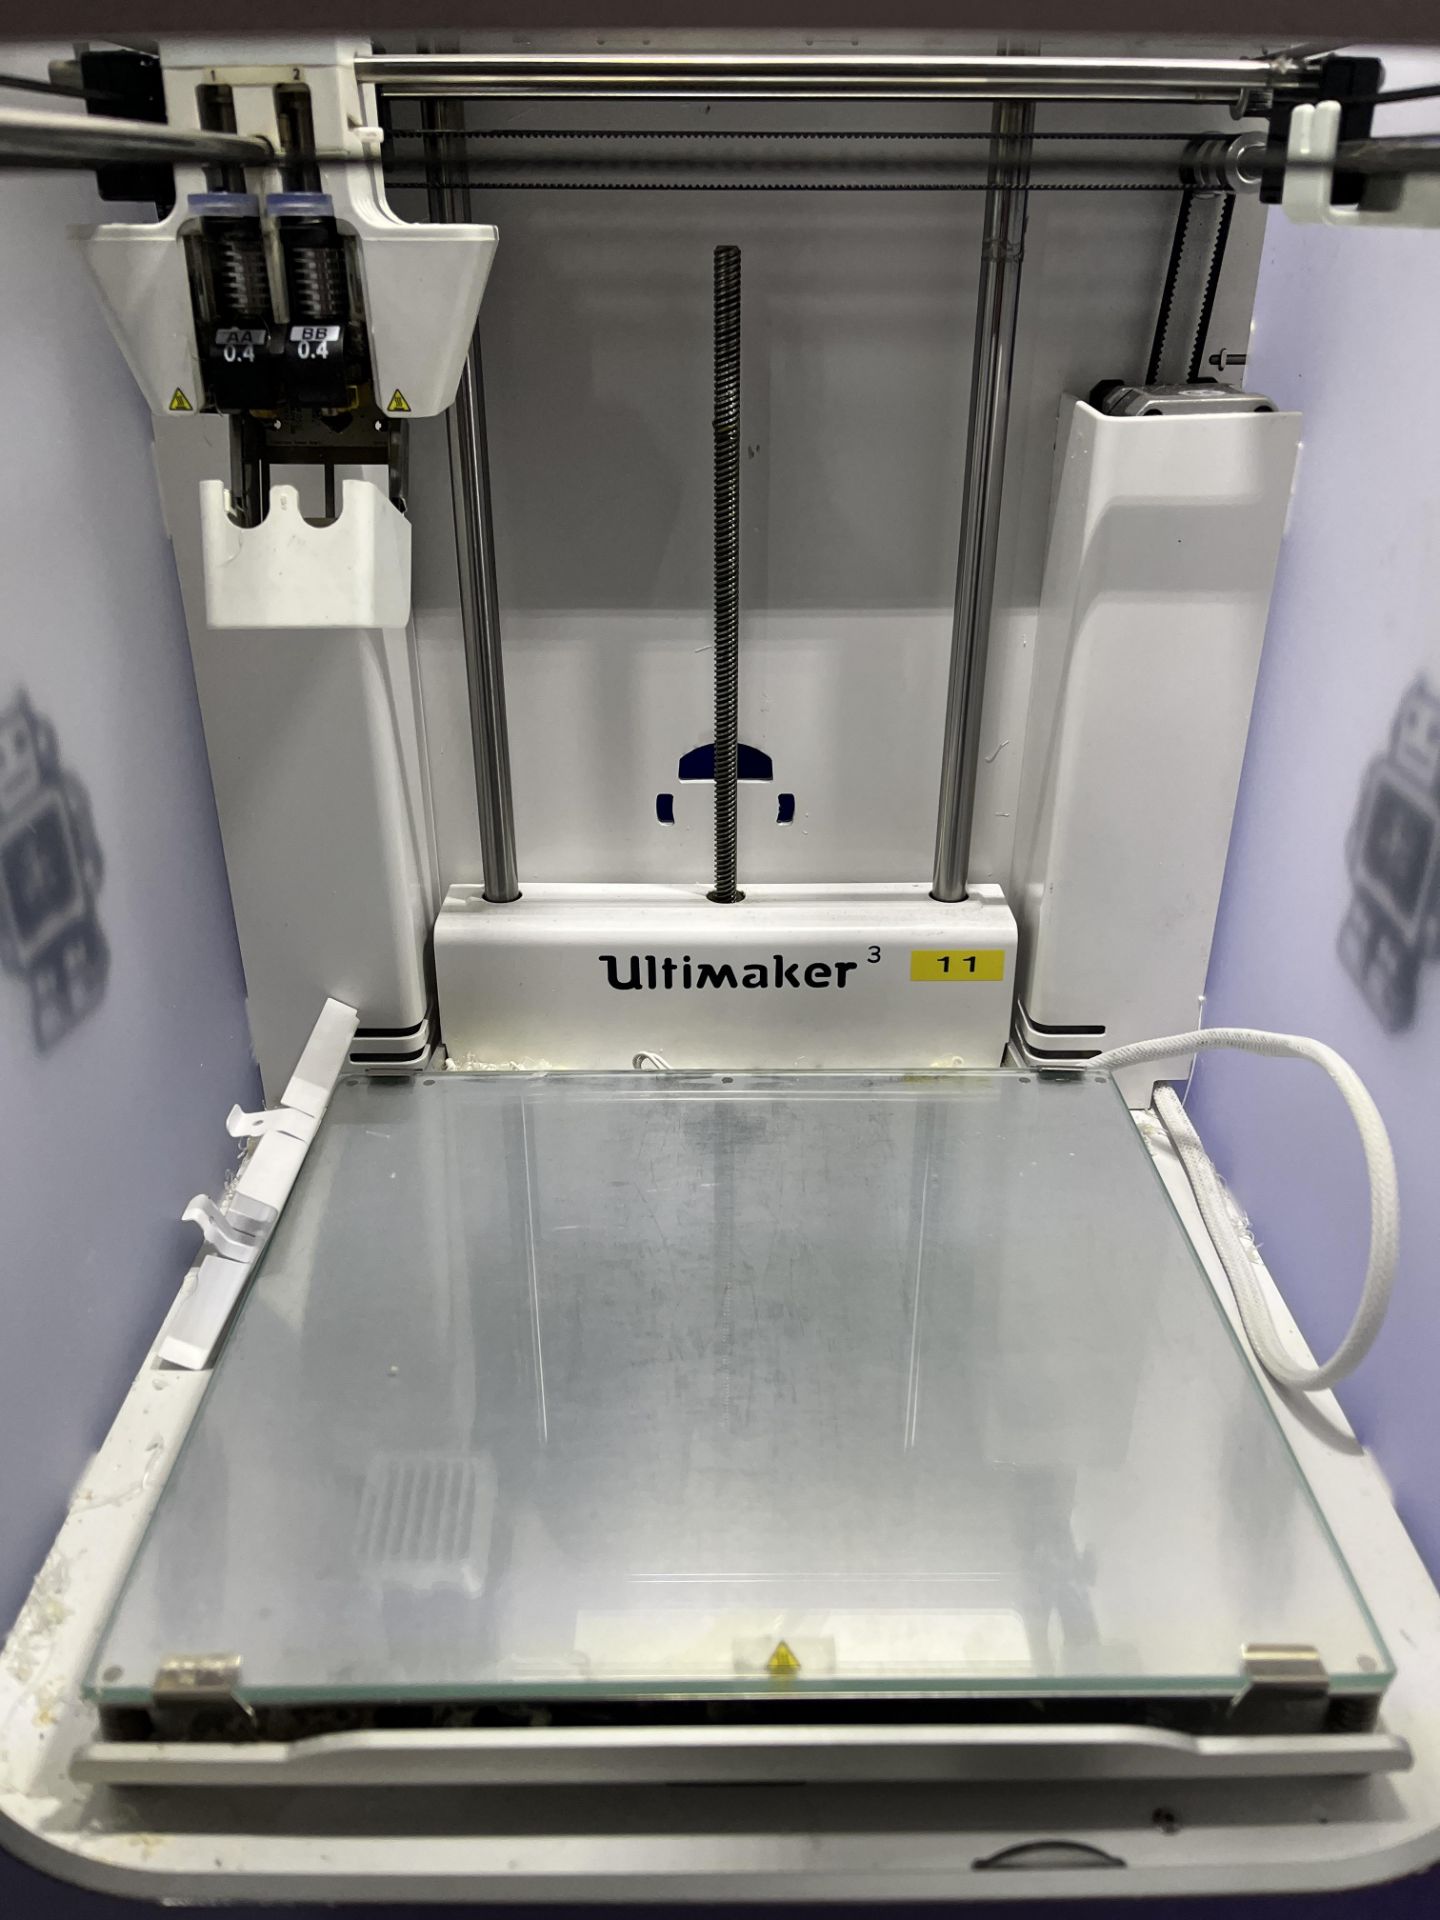 Ultimaker Model 3 3D printer - Image 2 of 4